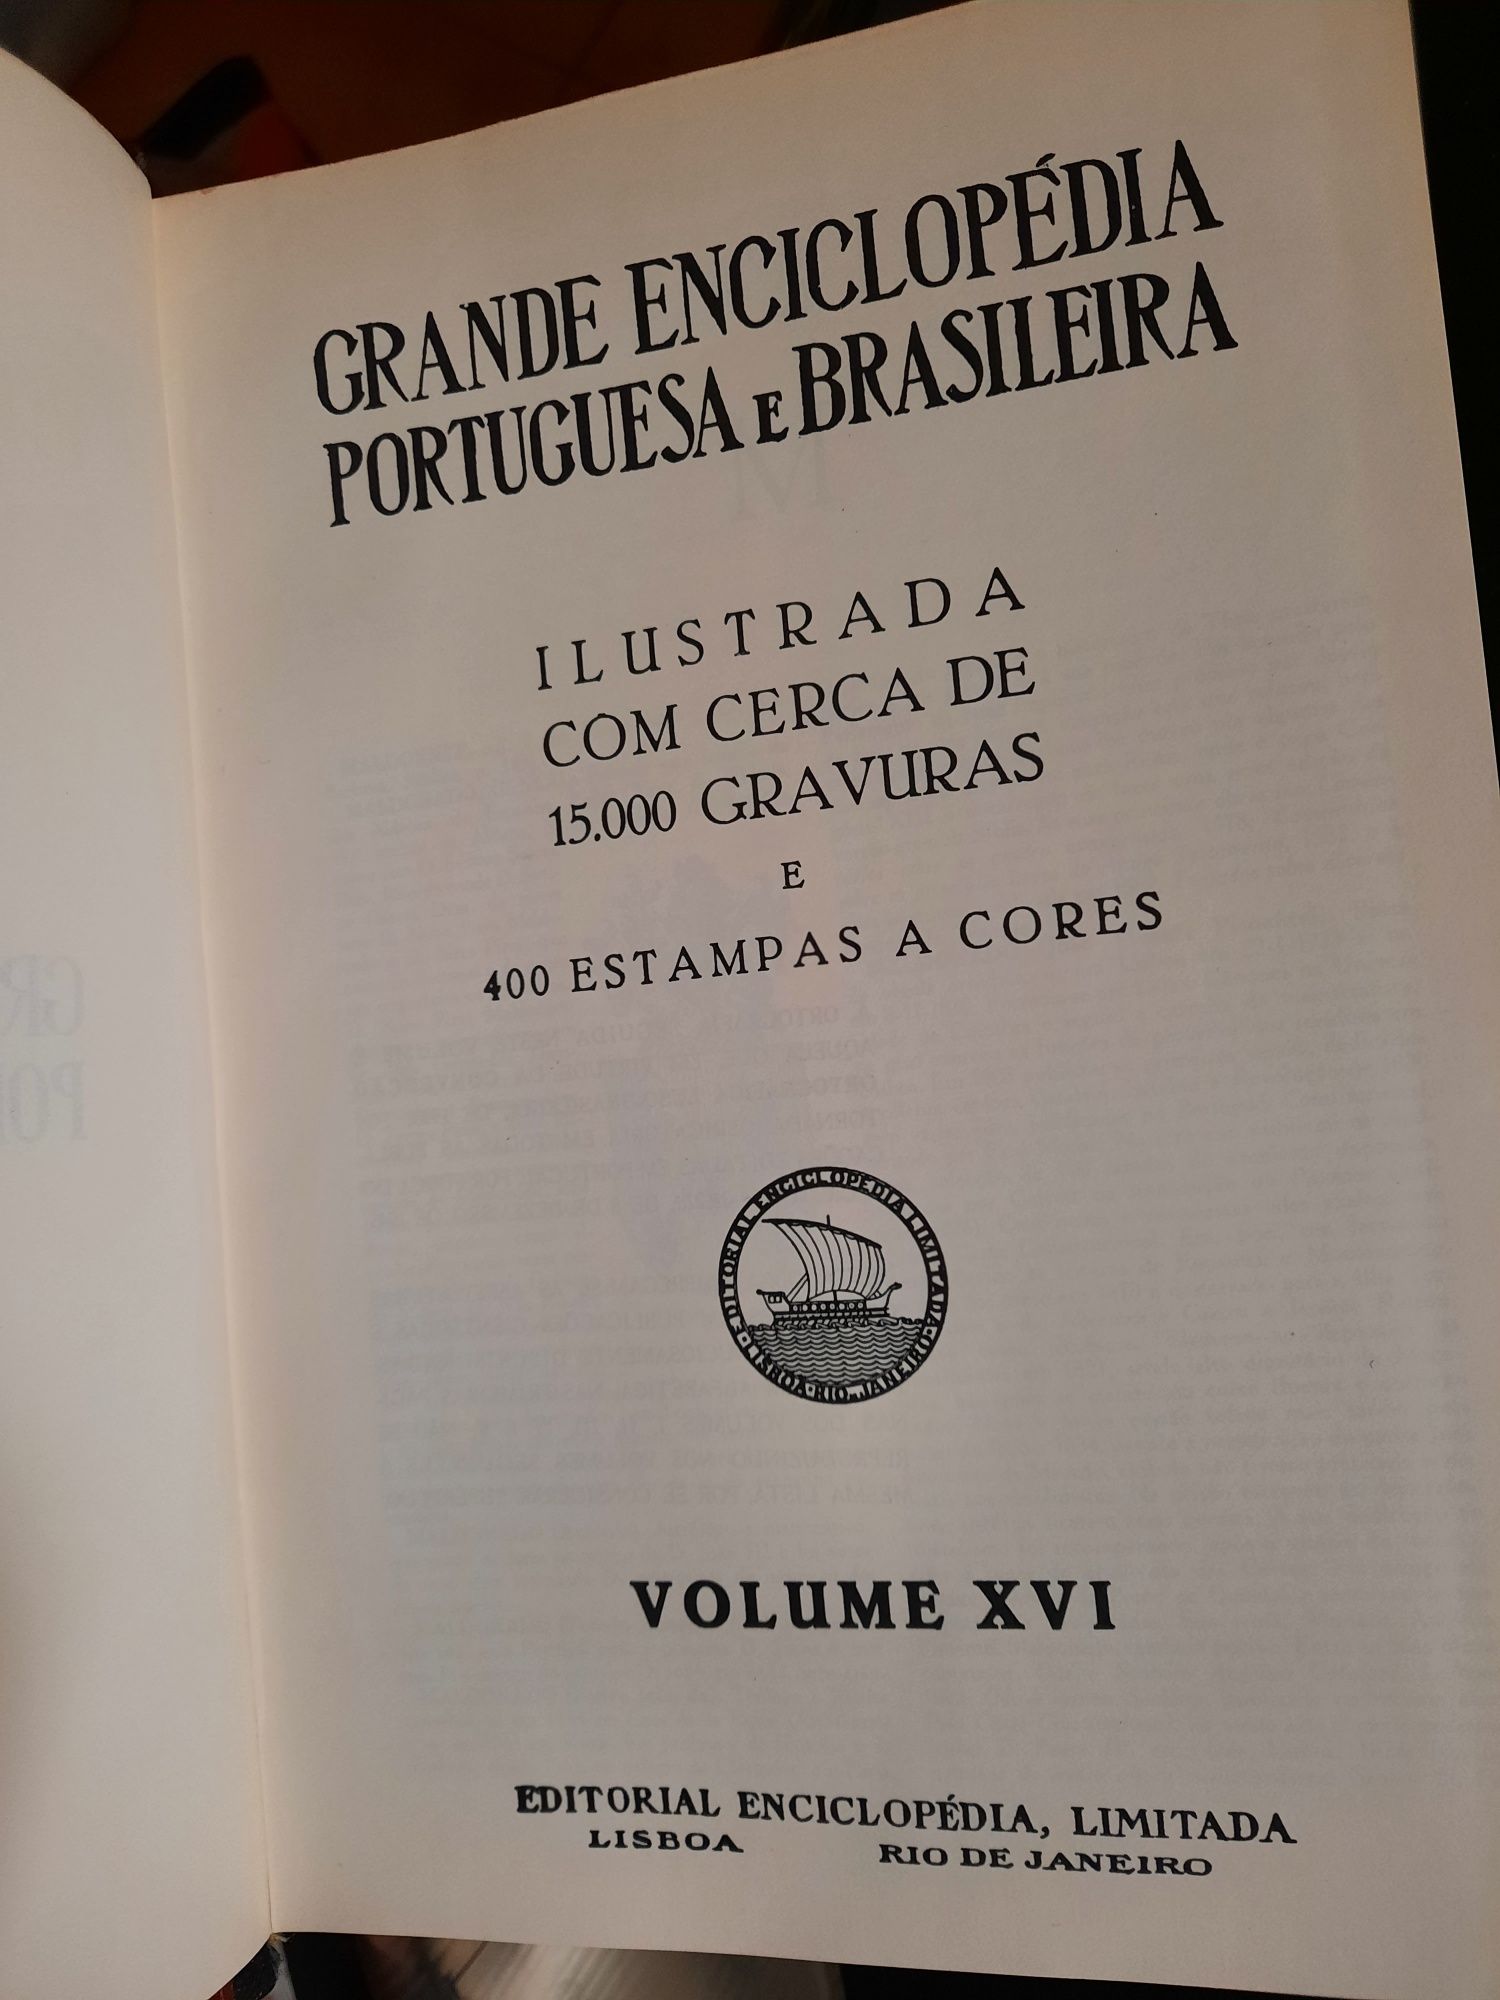 Grande Enciclopédia Portuguesa e Brasileira. Muito bom estado.